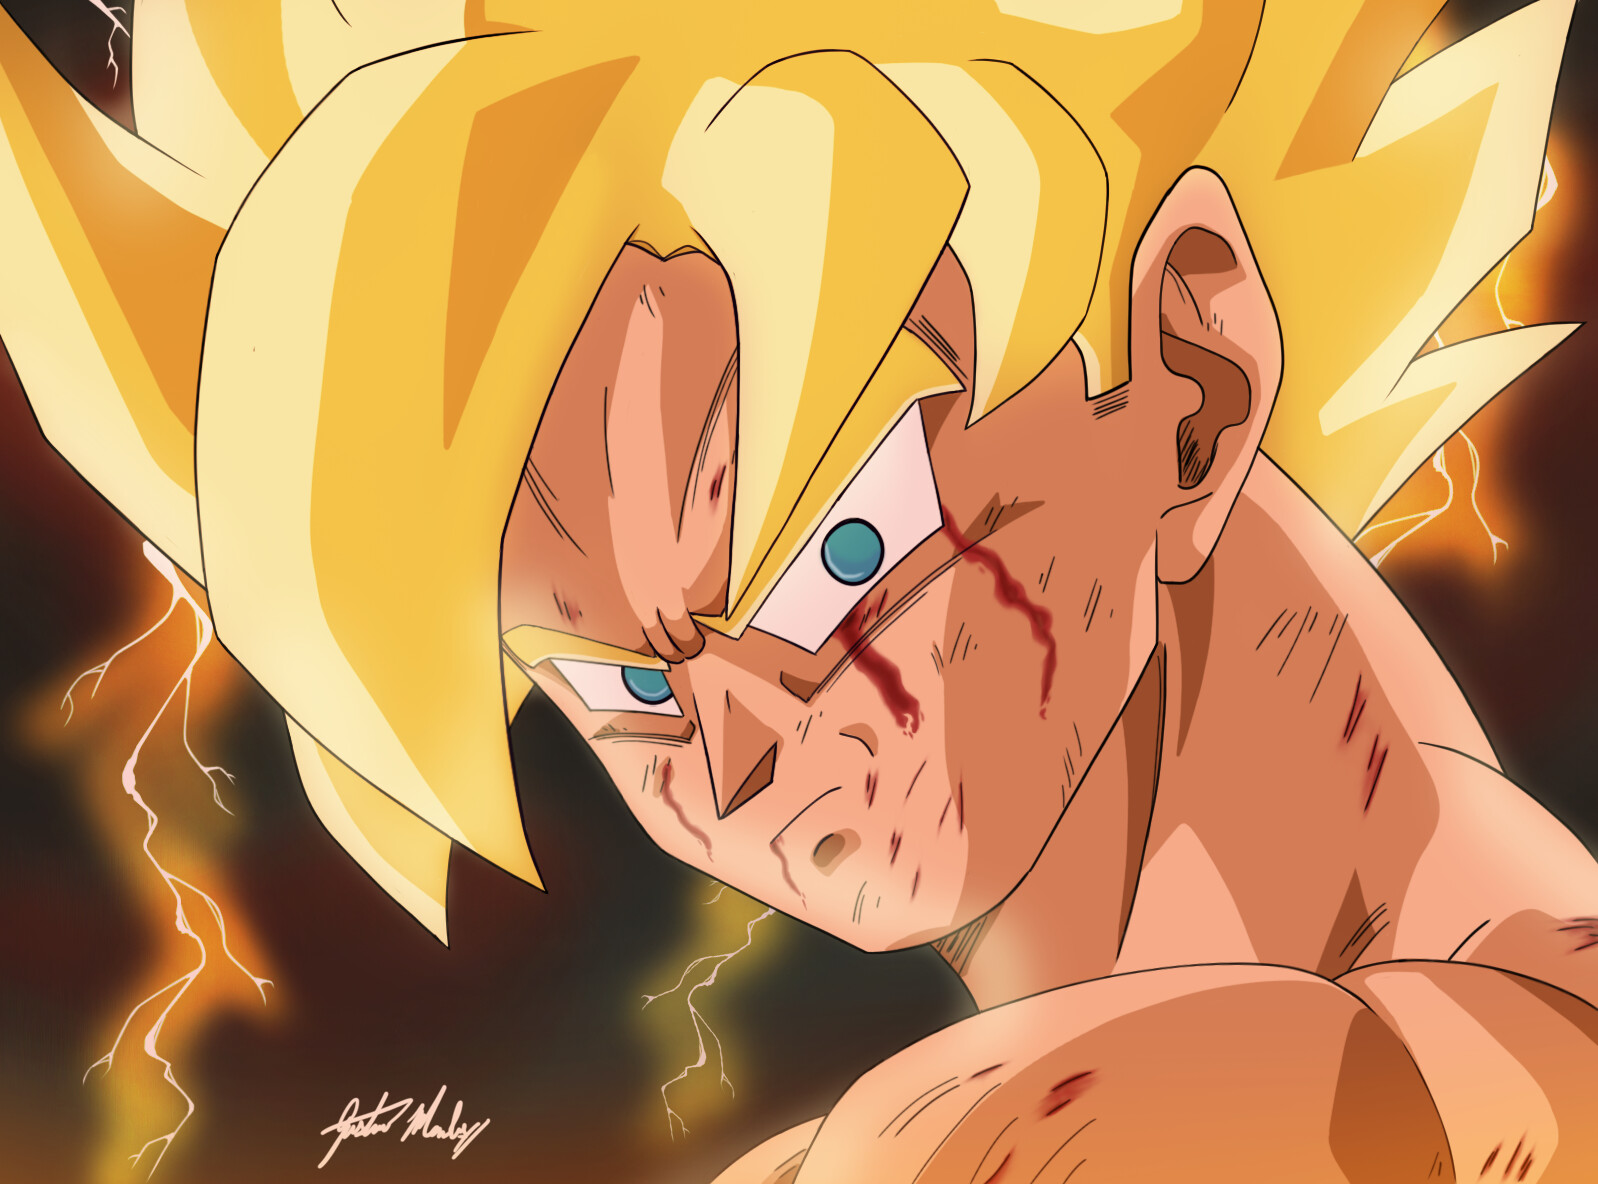 SSJ Goku Redraw (2022)(Drawn by Me) : r/dbz